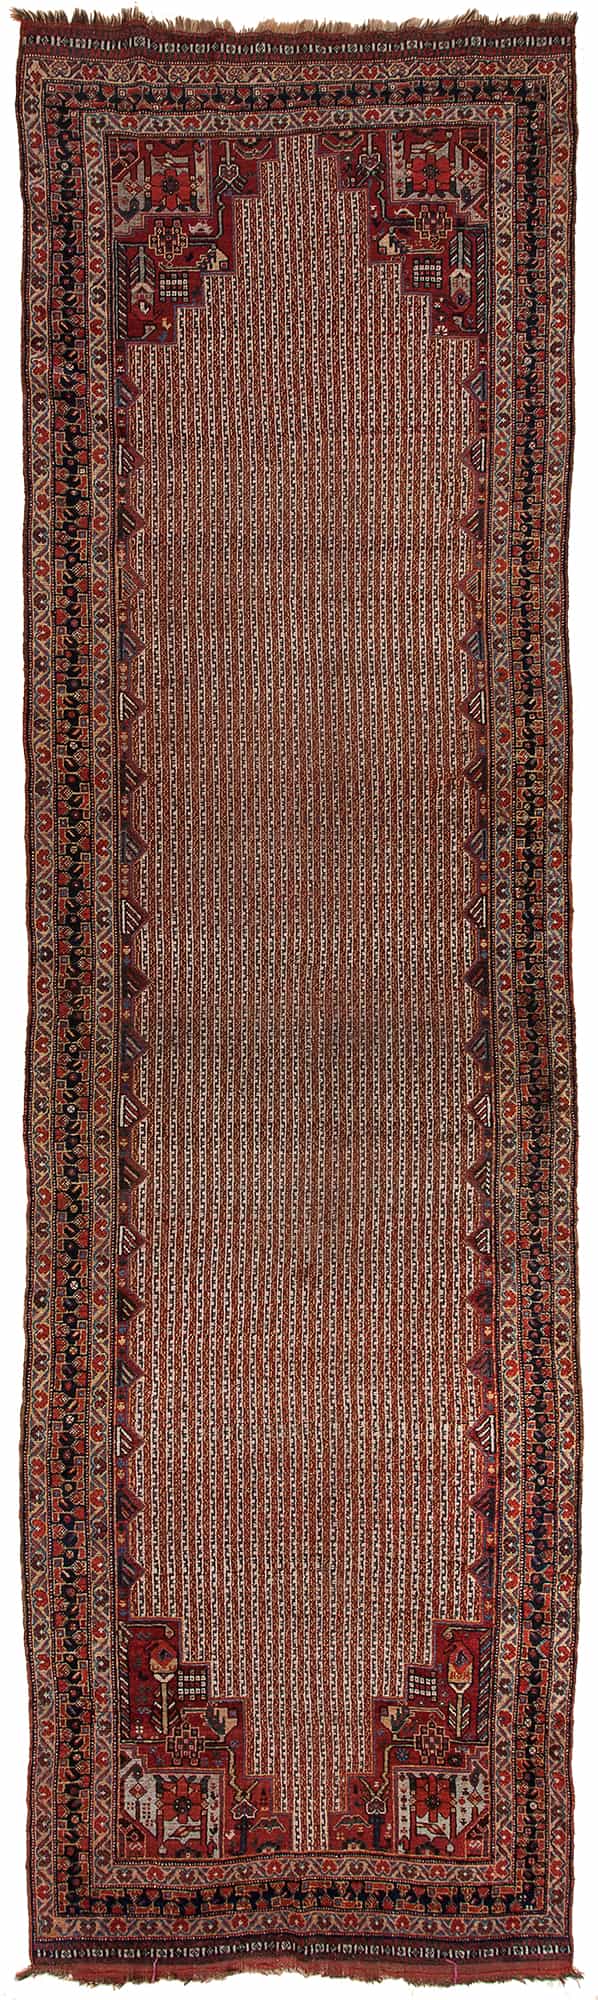 Antique Persian Qashqai Runner at Essie Carpets, Mayfair London